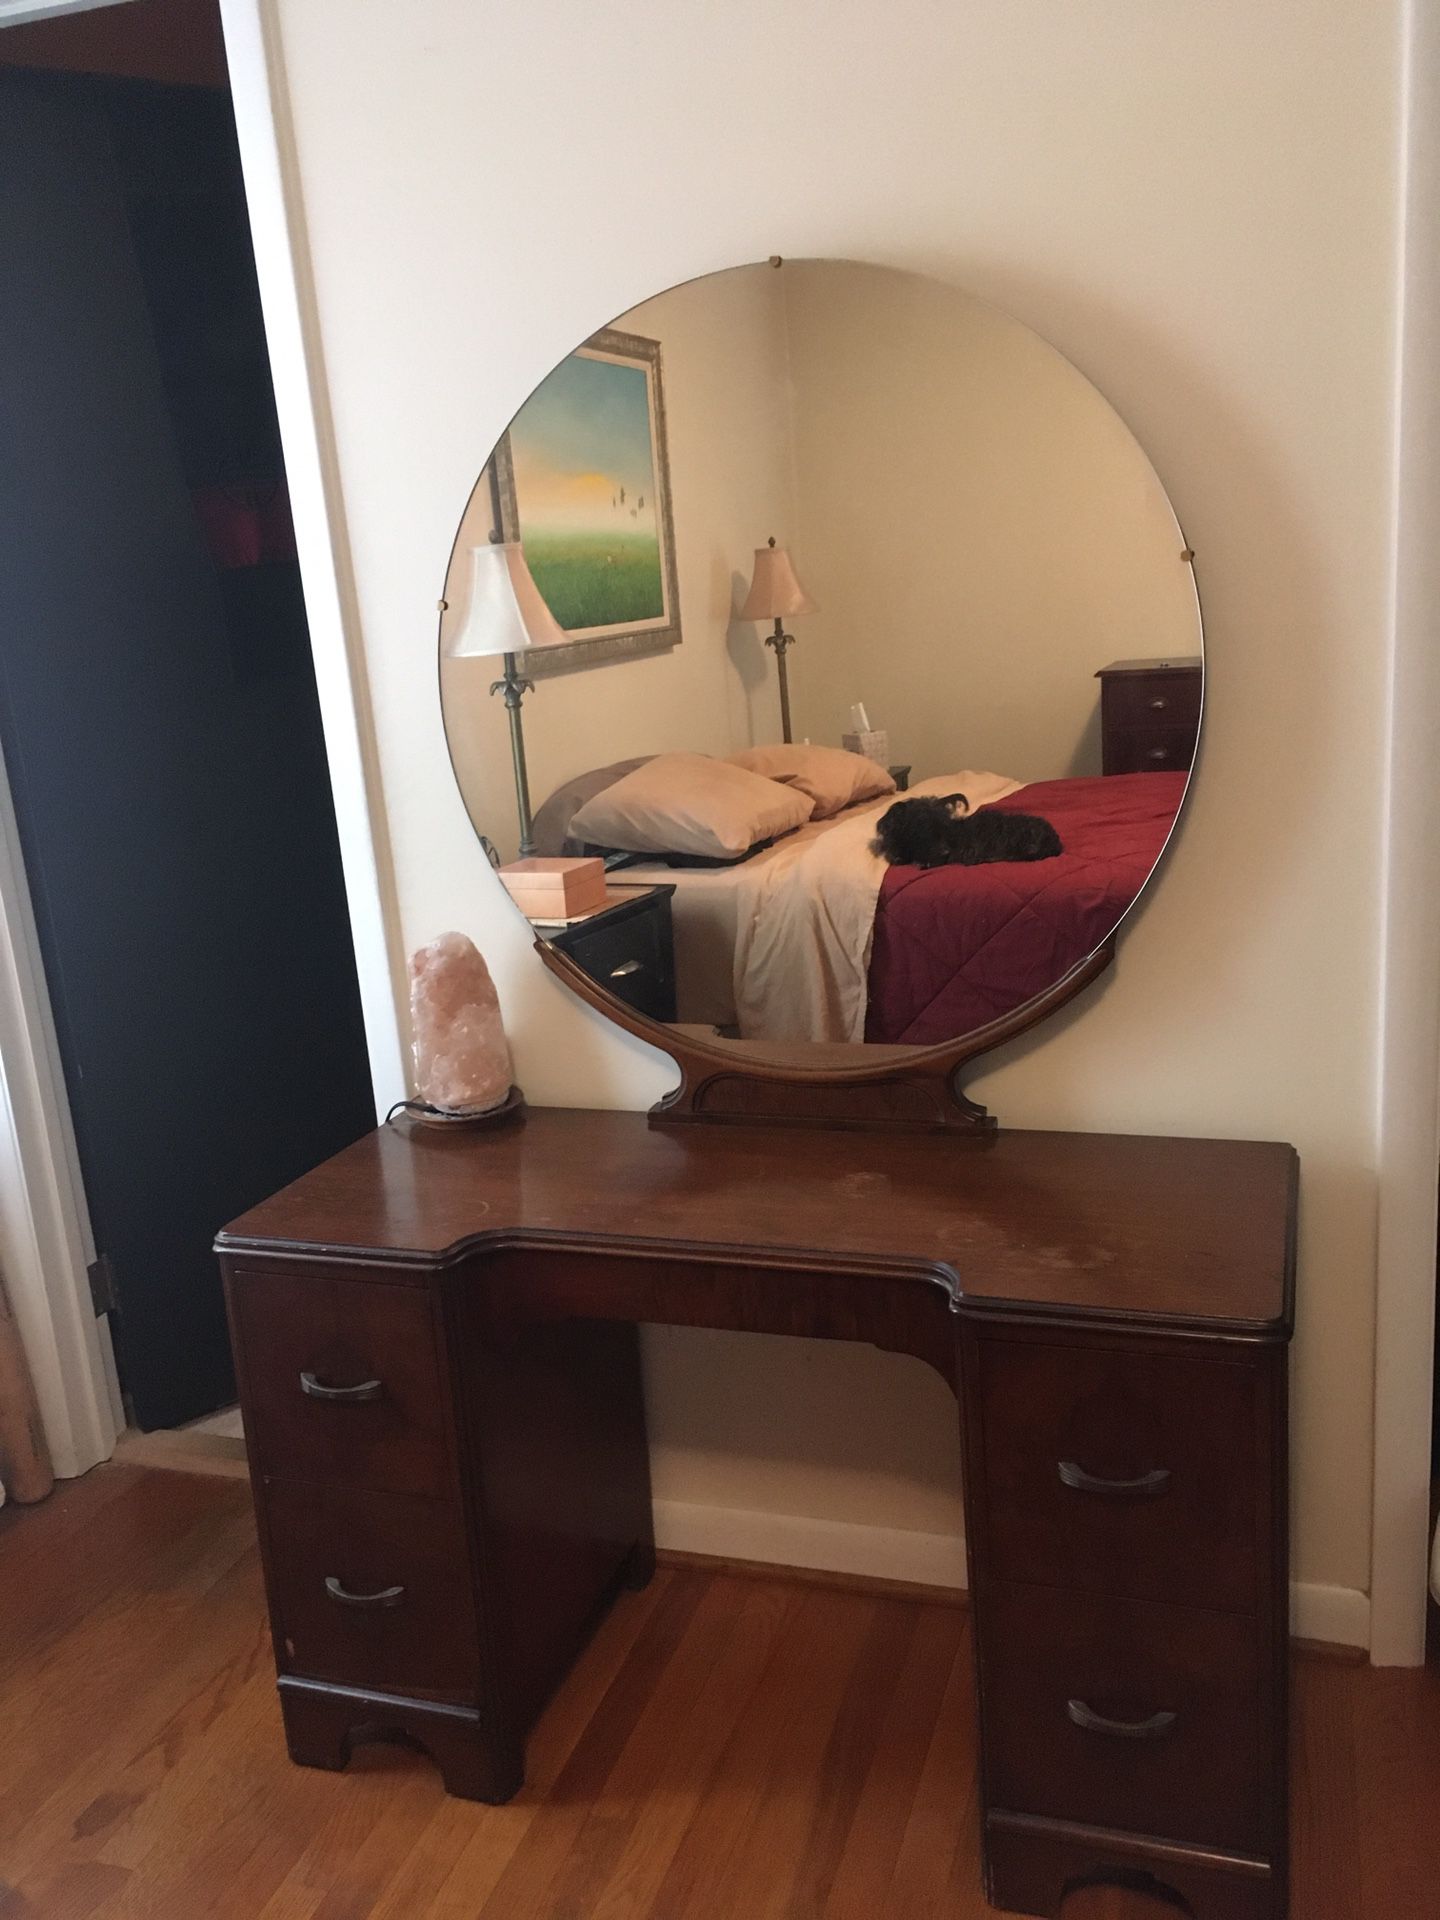 Dresser with Round Mirror